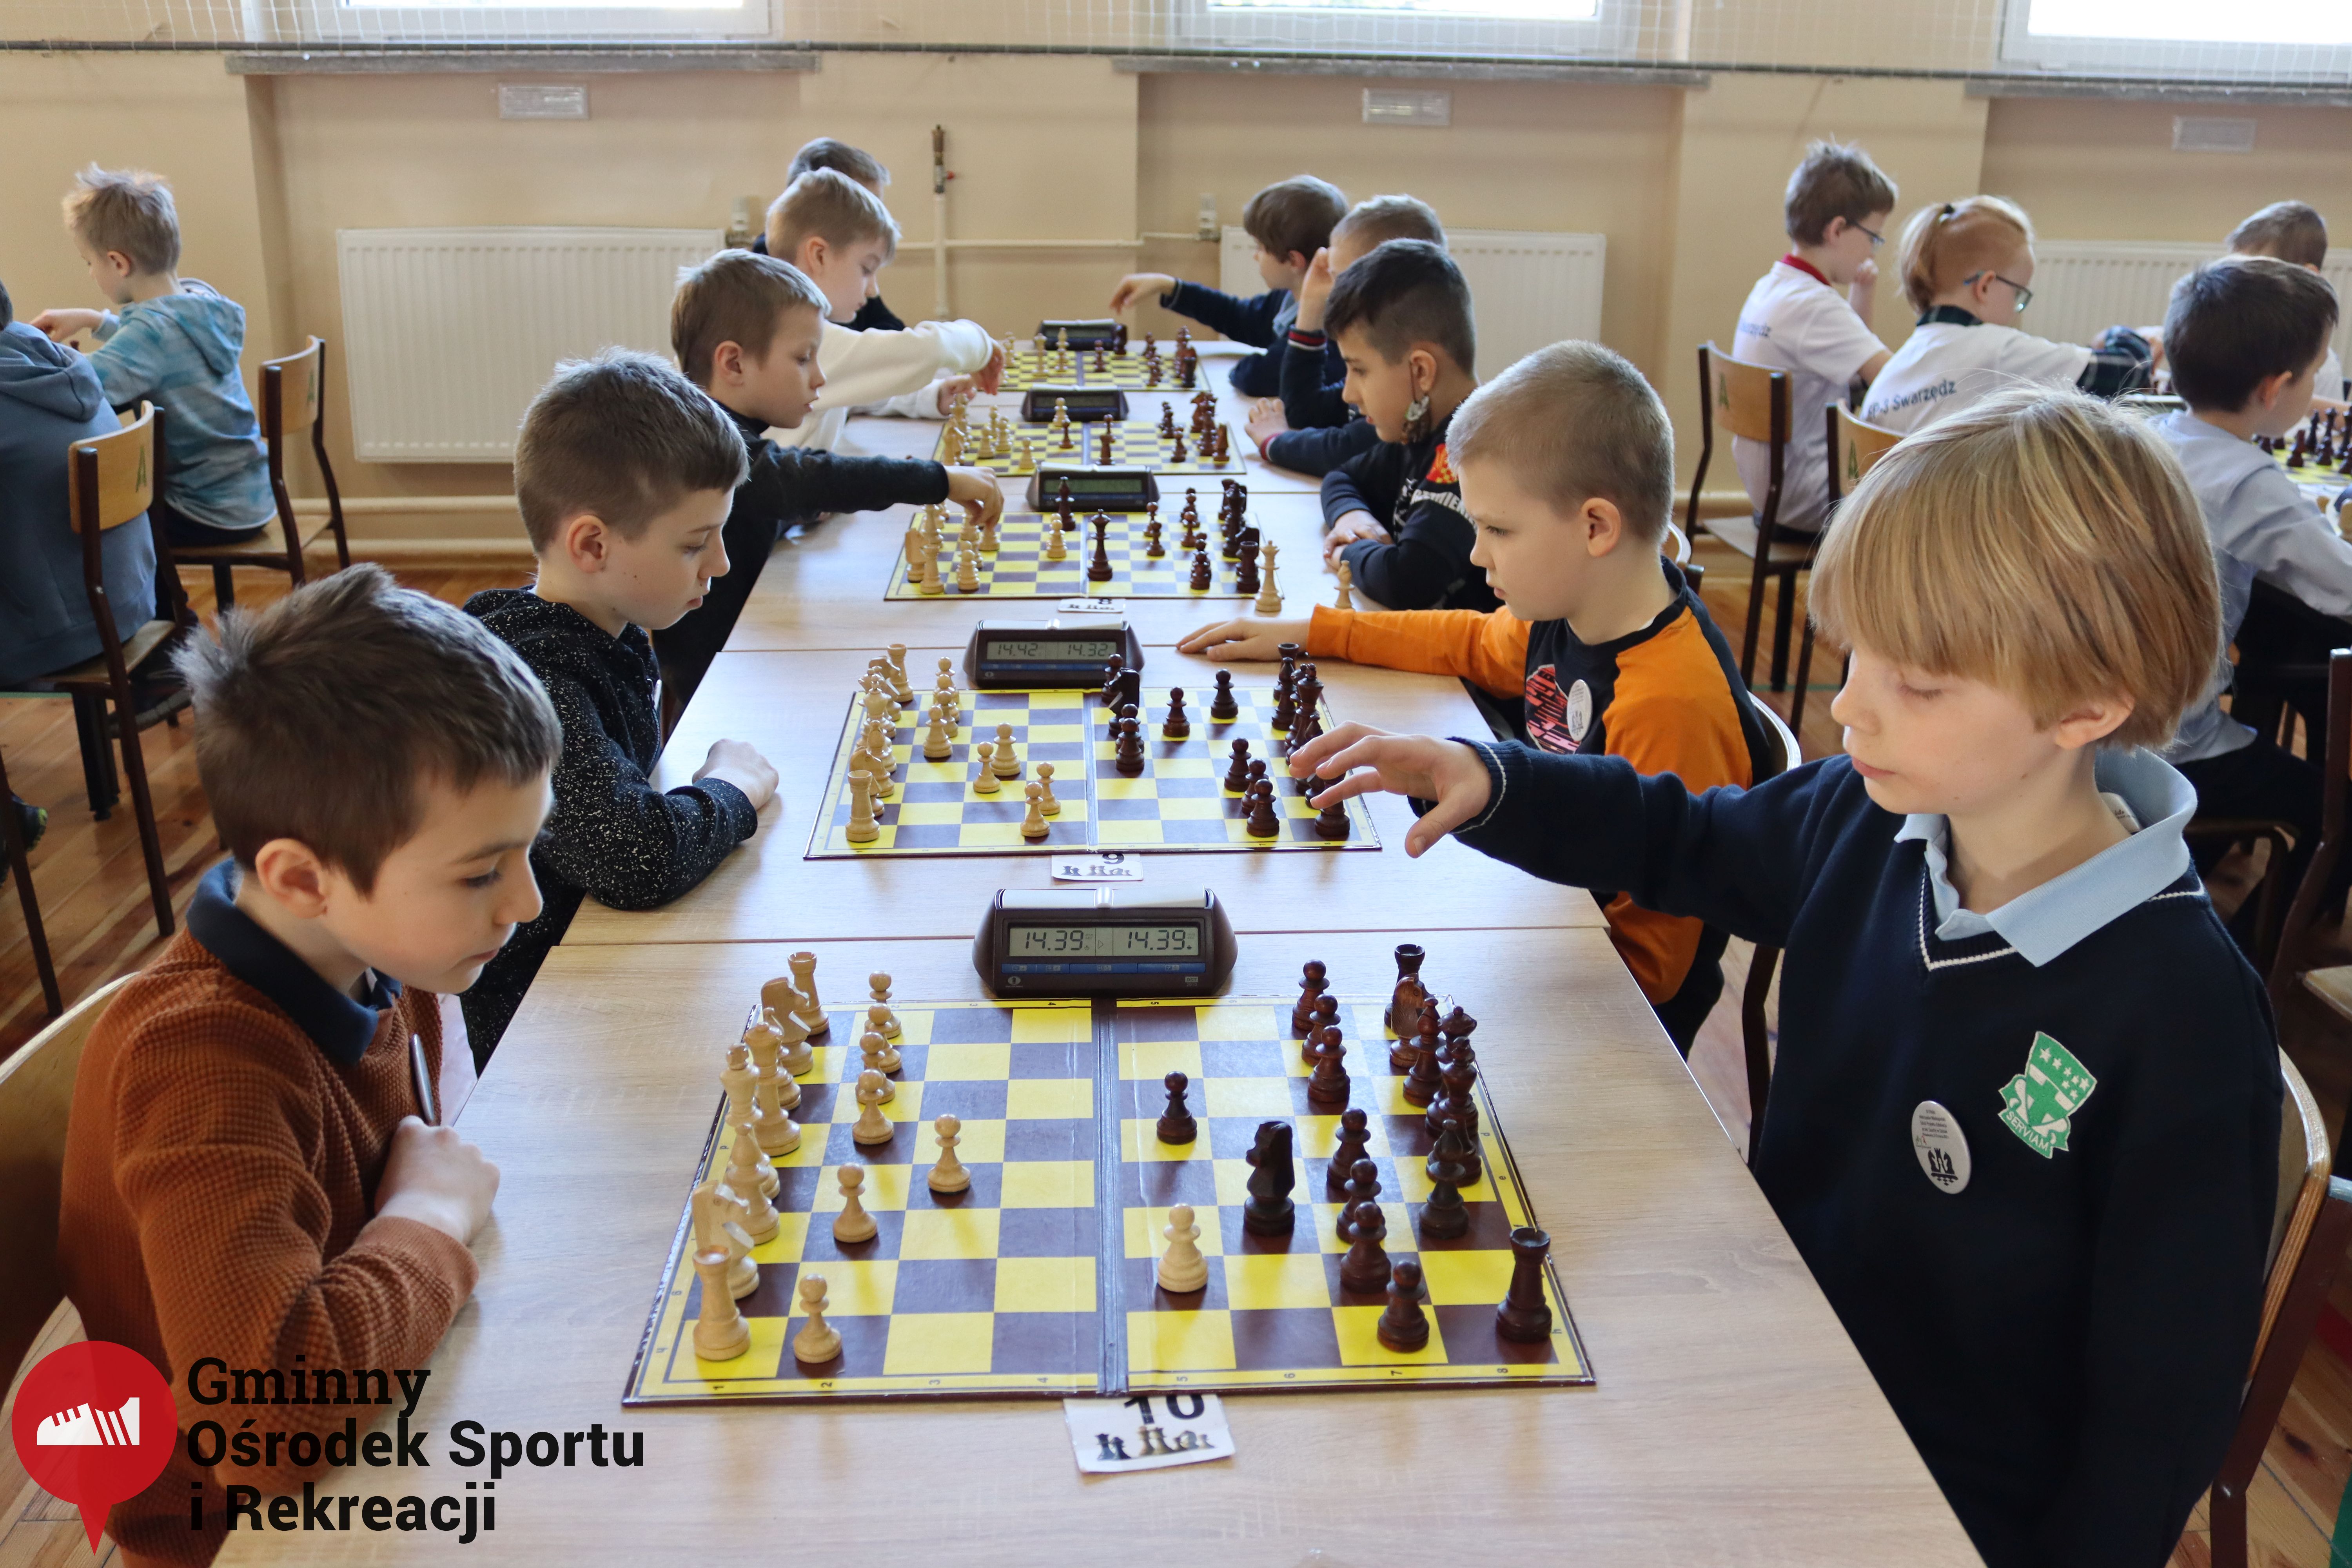 2022.03.12-13 Turniej szachowy - Edukacja przez Szachy038.jpg - 2,06 MB